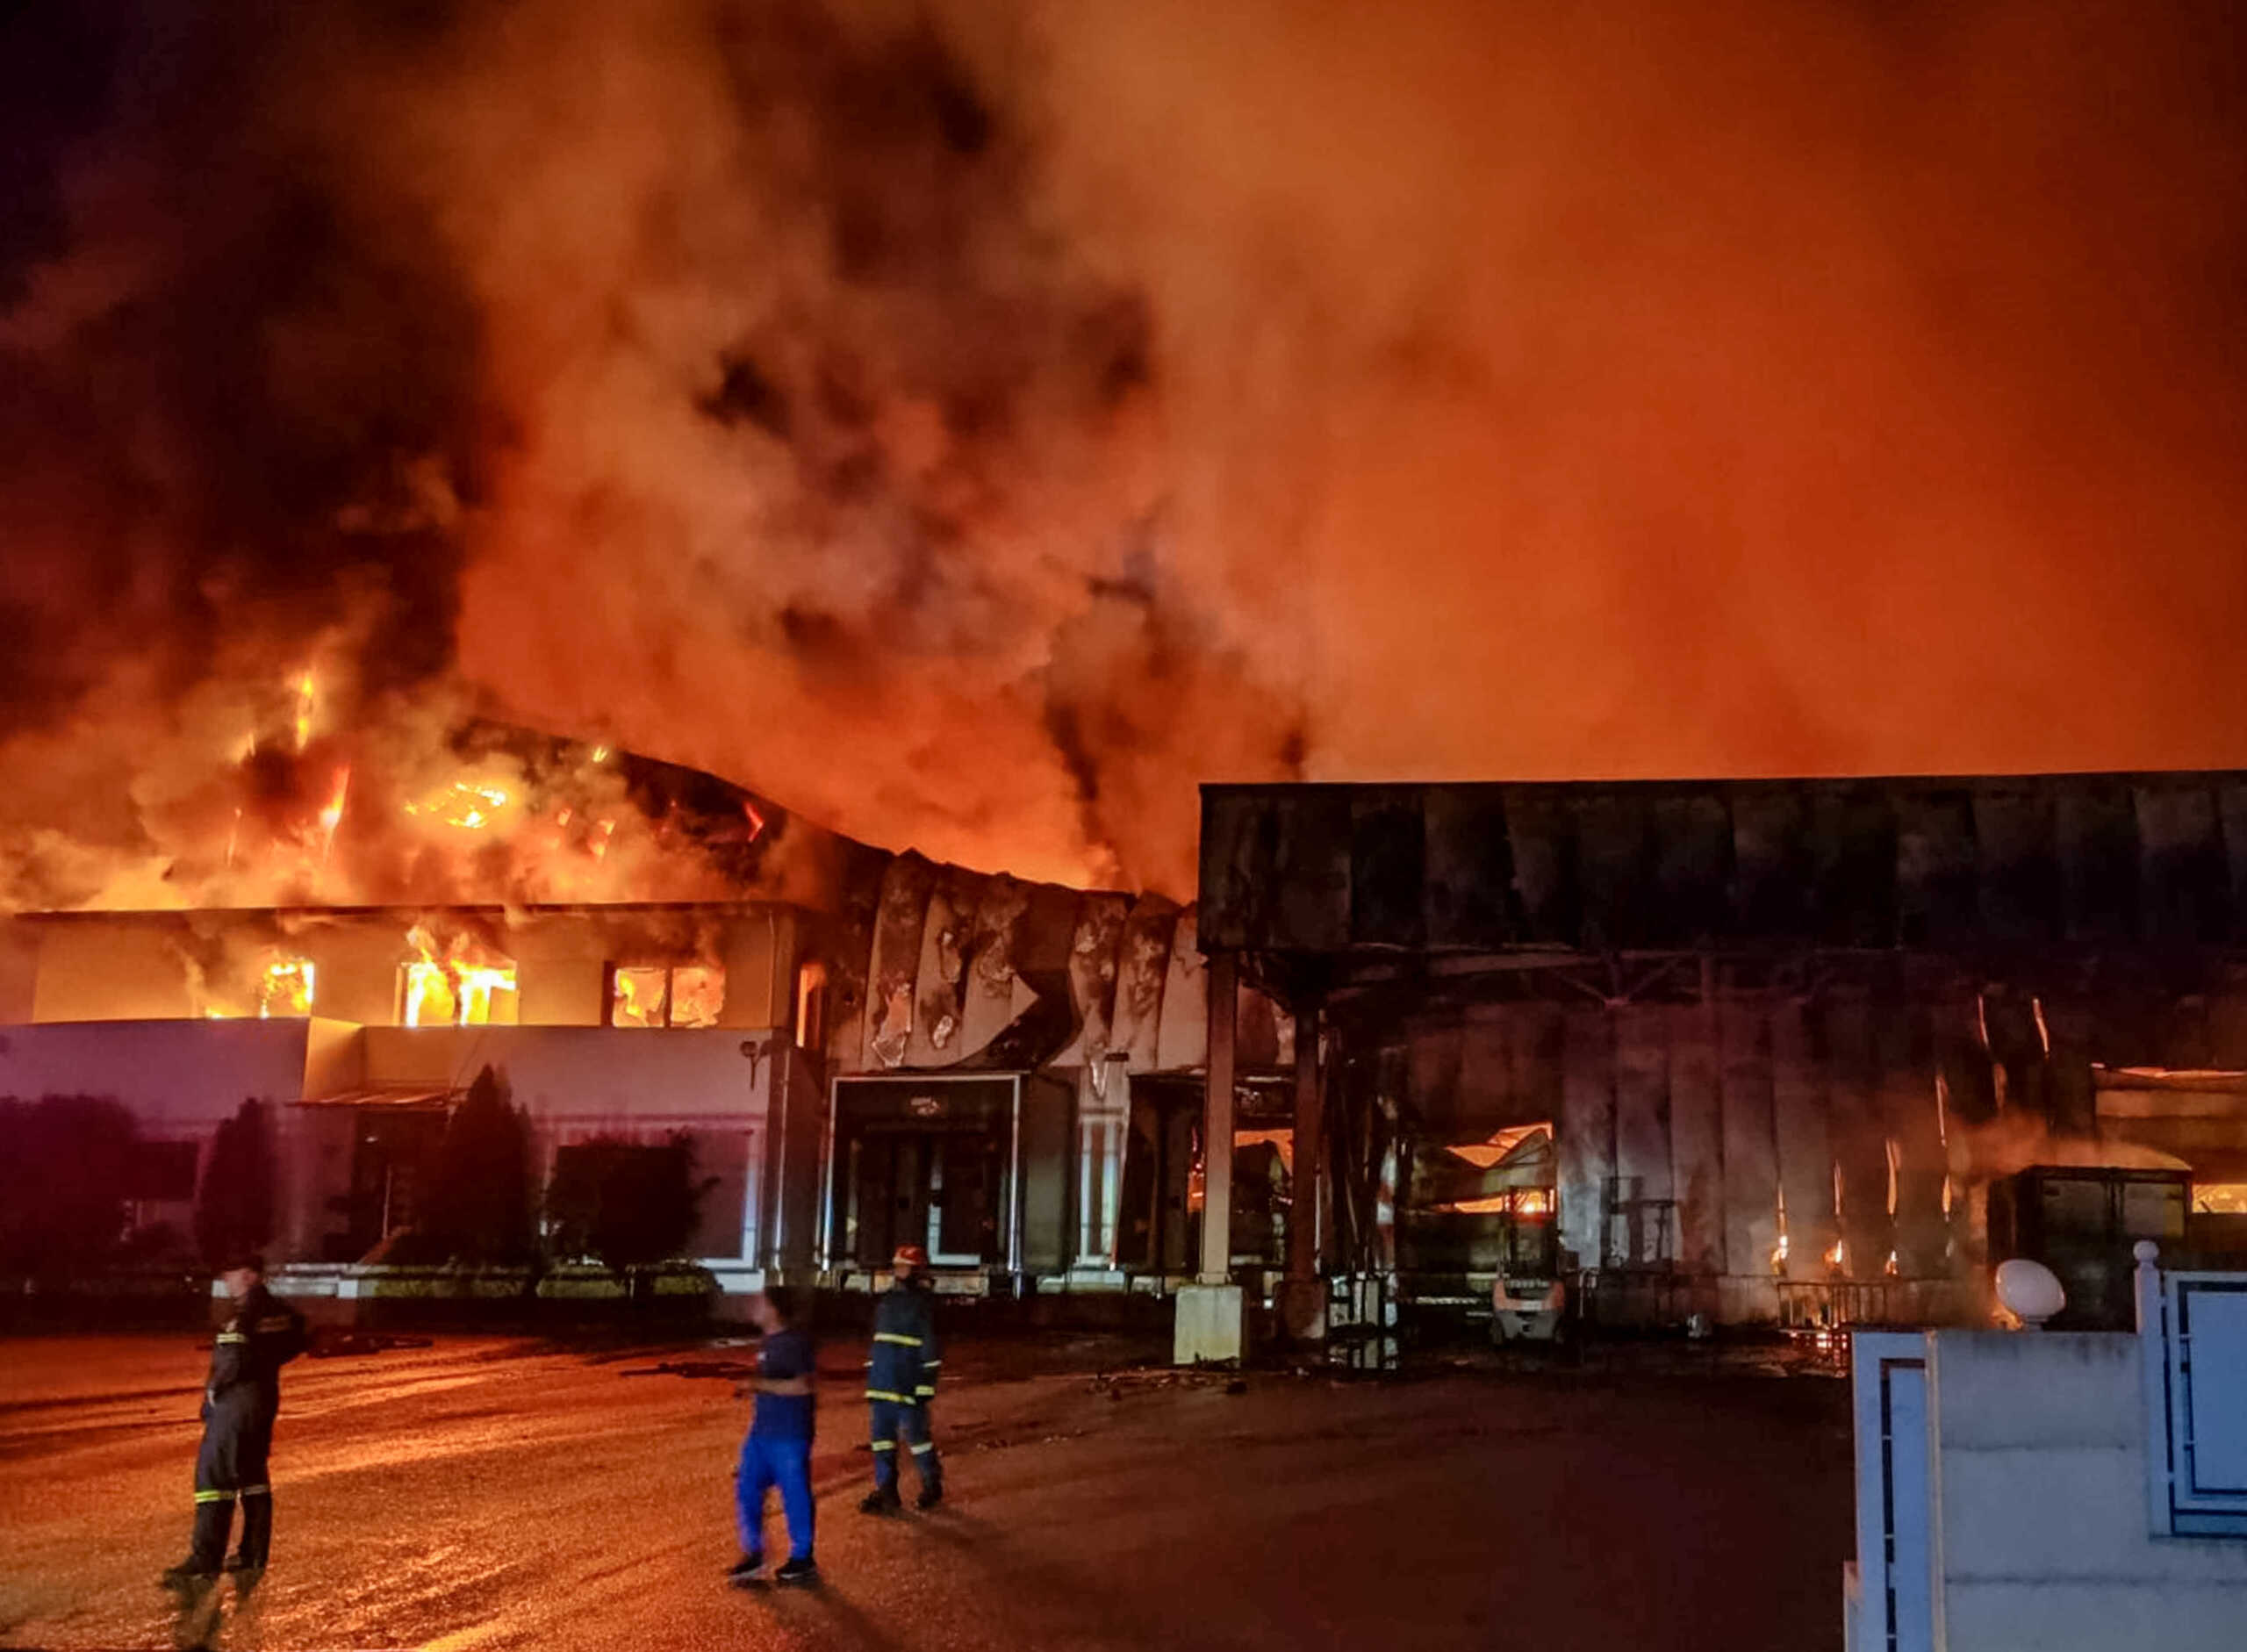 Δύο ημέρες πριν τη φωτιά στο εργοστάσιο Γιαννίτση ζητούσαν από την ασφαλιστική αύξηση αποζημίωσης σε «περίπτωση πυρκαγιάς»